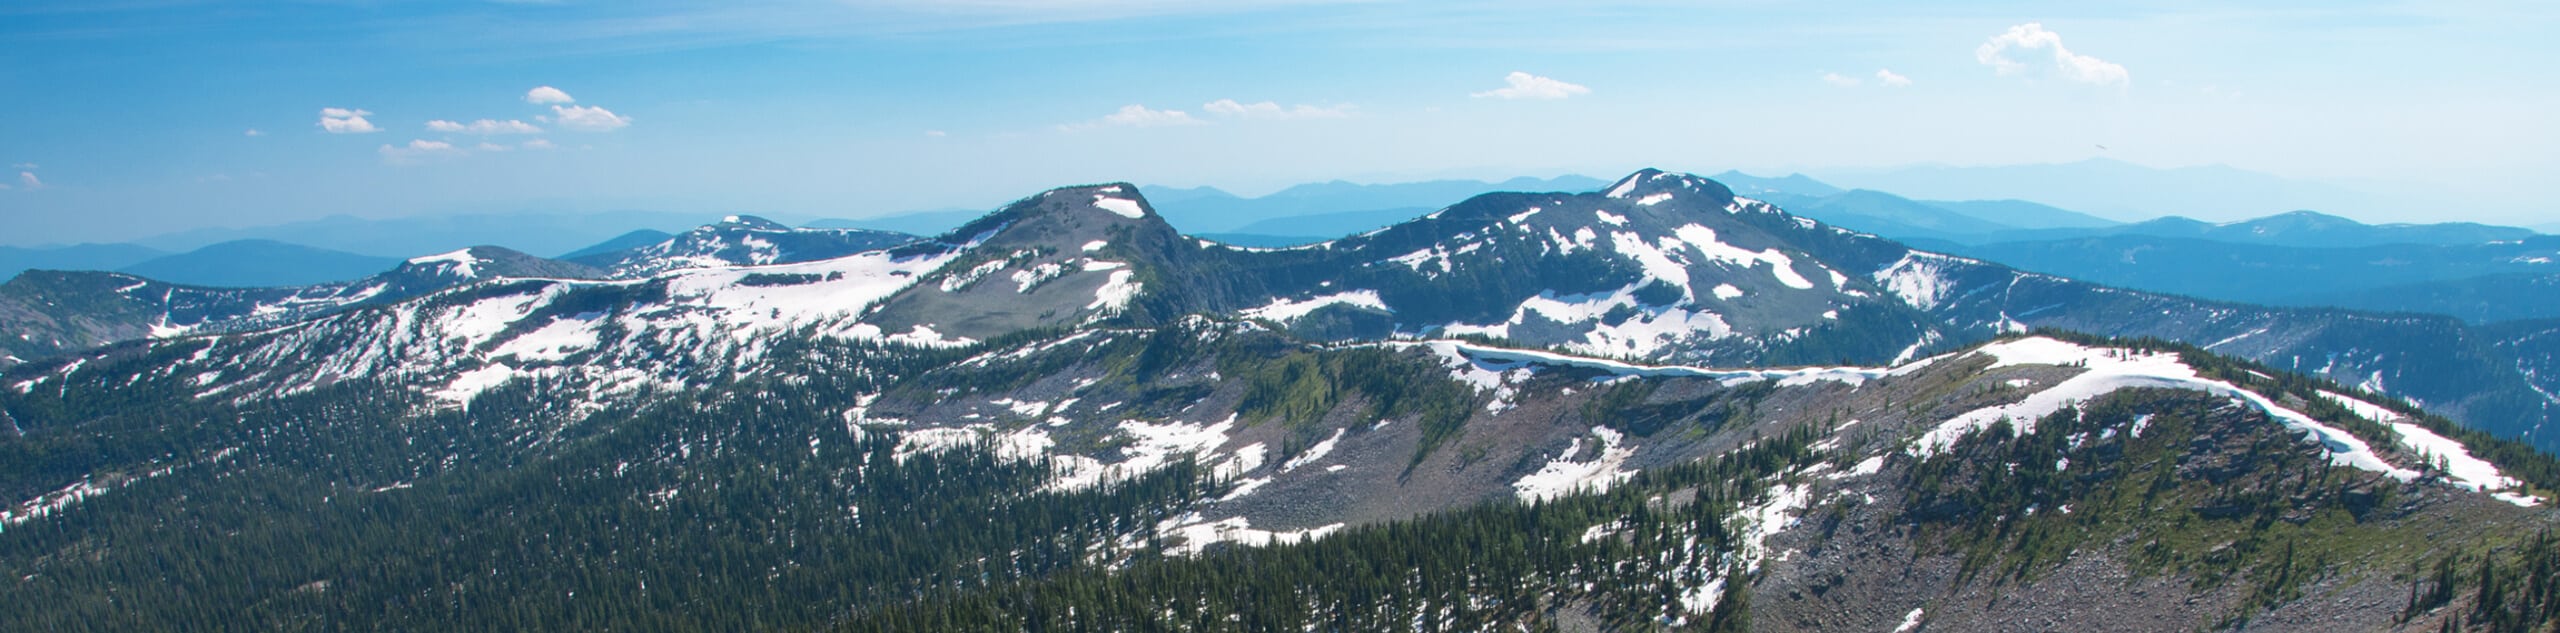 Northwest Peak Trail